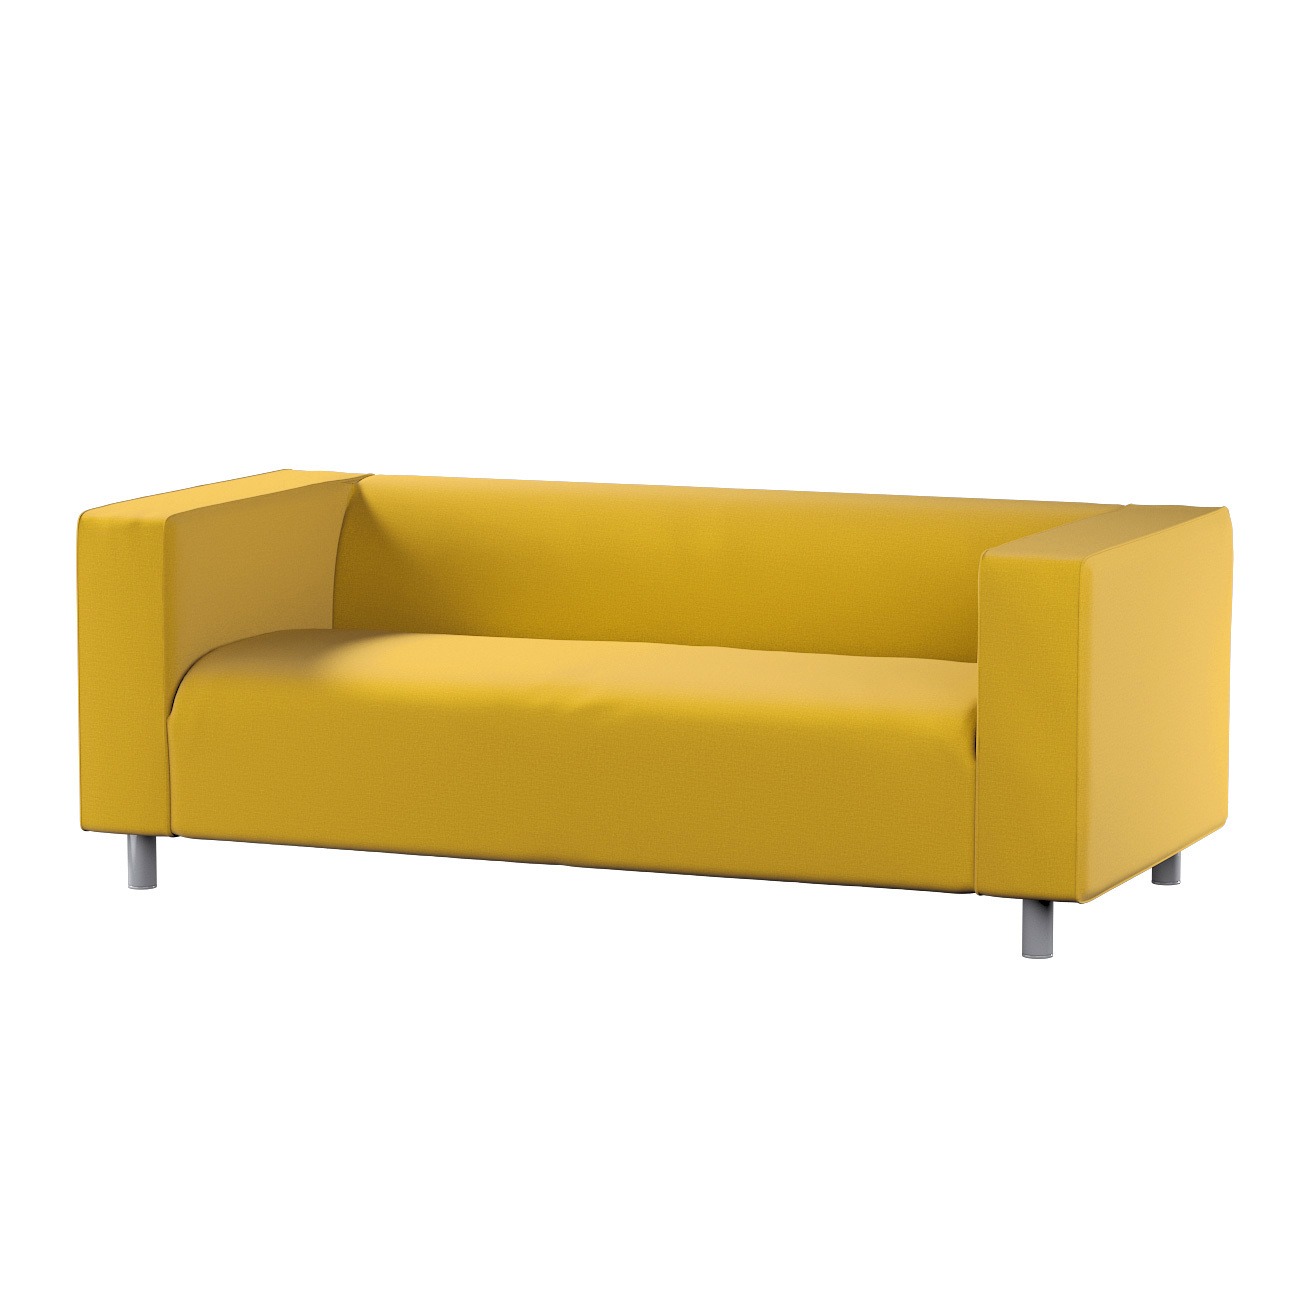 Bezug für Klippan 2-Sitzer Sofa, honiggelb, Sofahusse, Klippan 2-Sitzer, In günstig online kaufen